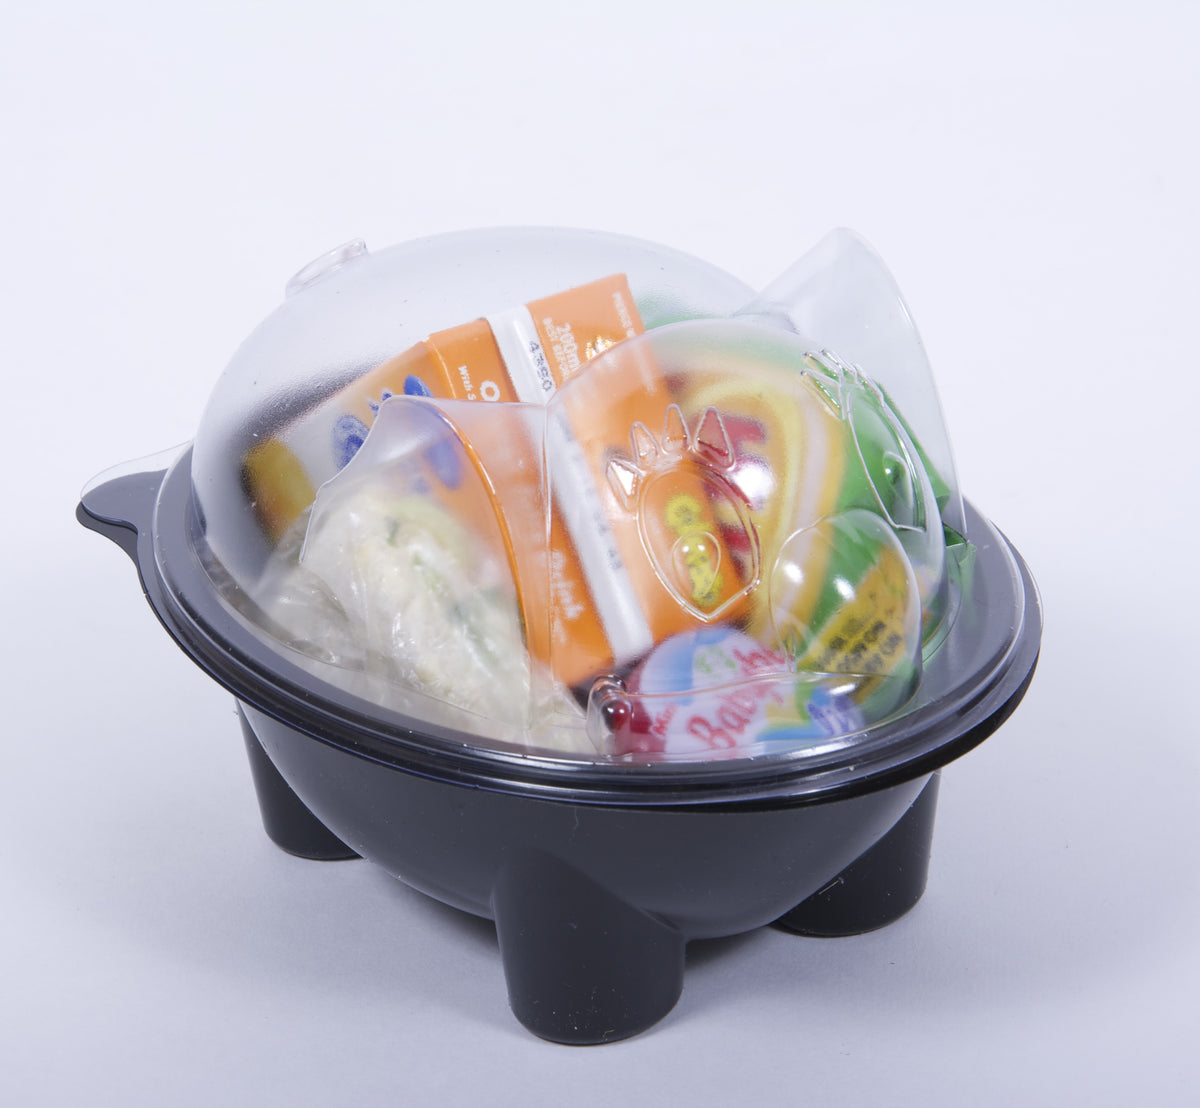 Ellie Elephant Salad & Snack Bowls For Kids- 20 Black Bases + 20 Elephant Lids